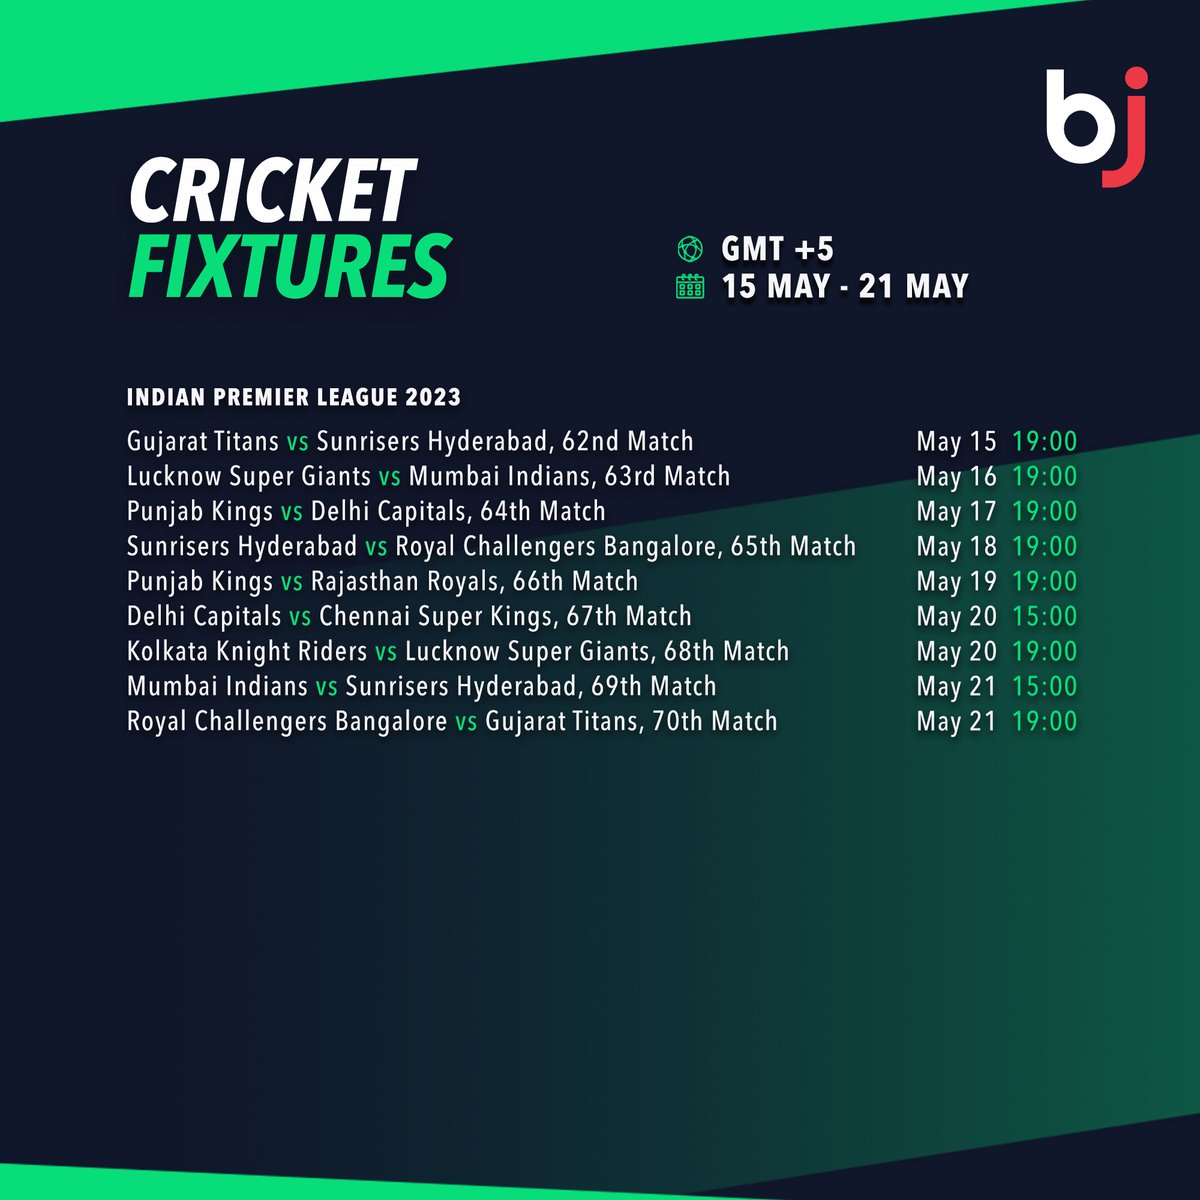 اگلے ہفتےBajiپرIPLکے تمام میچوں کا شیڈول دیکھیں!
 
💥 ابھی BjBaji5.com ممبر کے طور پر رجسٹر ہوں!!💥
 
#Baji #BJ #Sports #Cricket #Schedule #CricketFixture #IPL2023